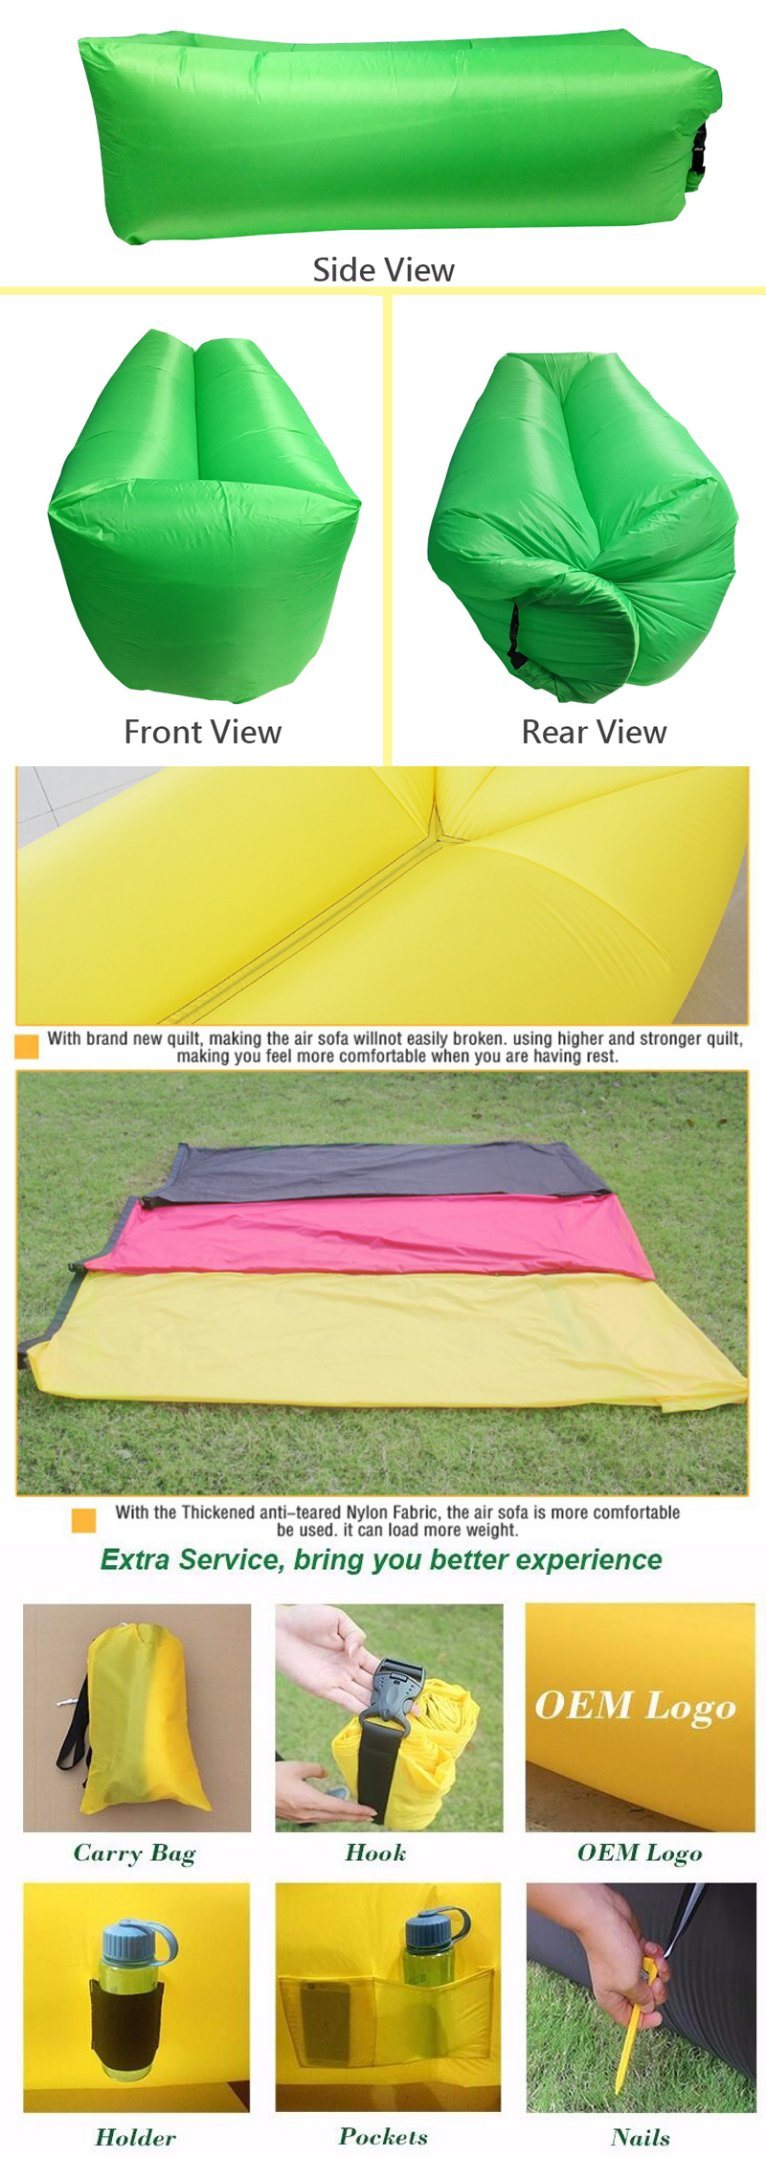 Portable Inflatable Sleeping Bag Lazy Bag